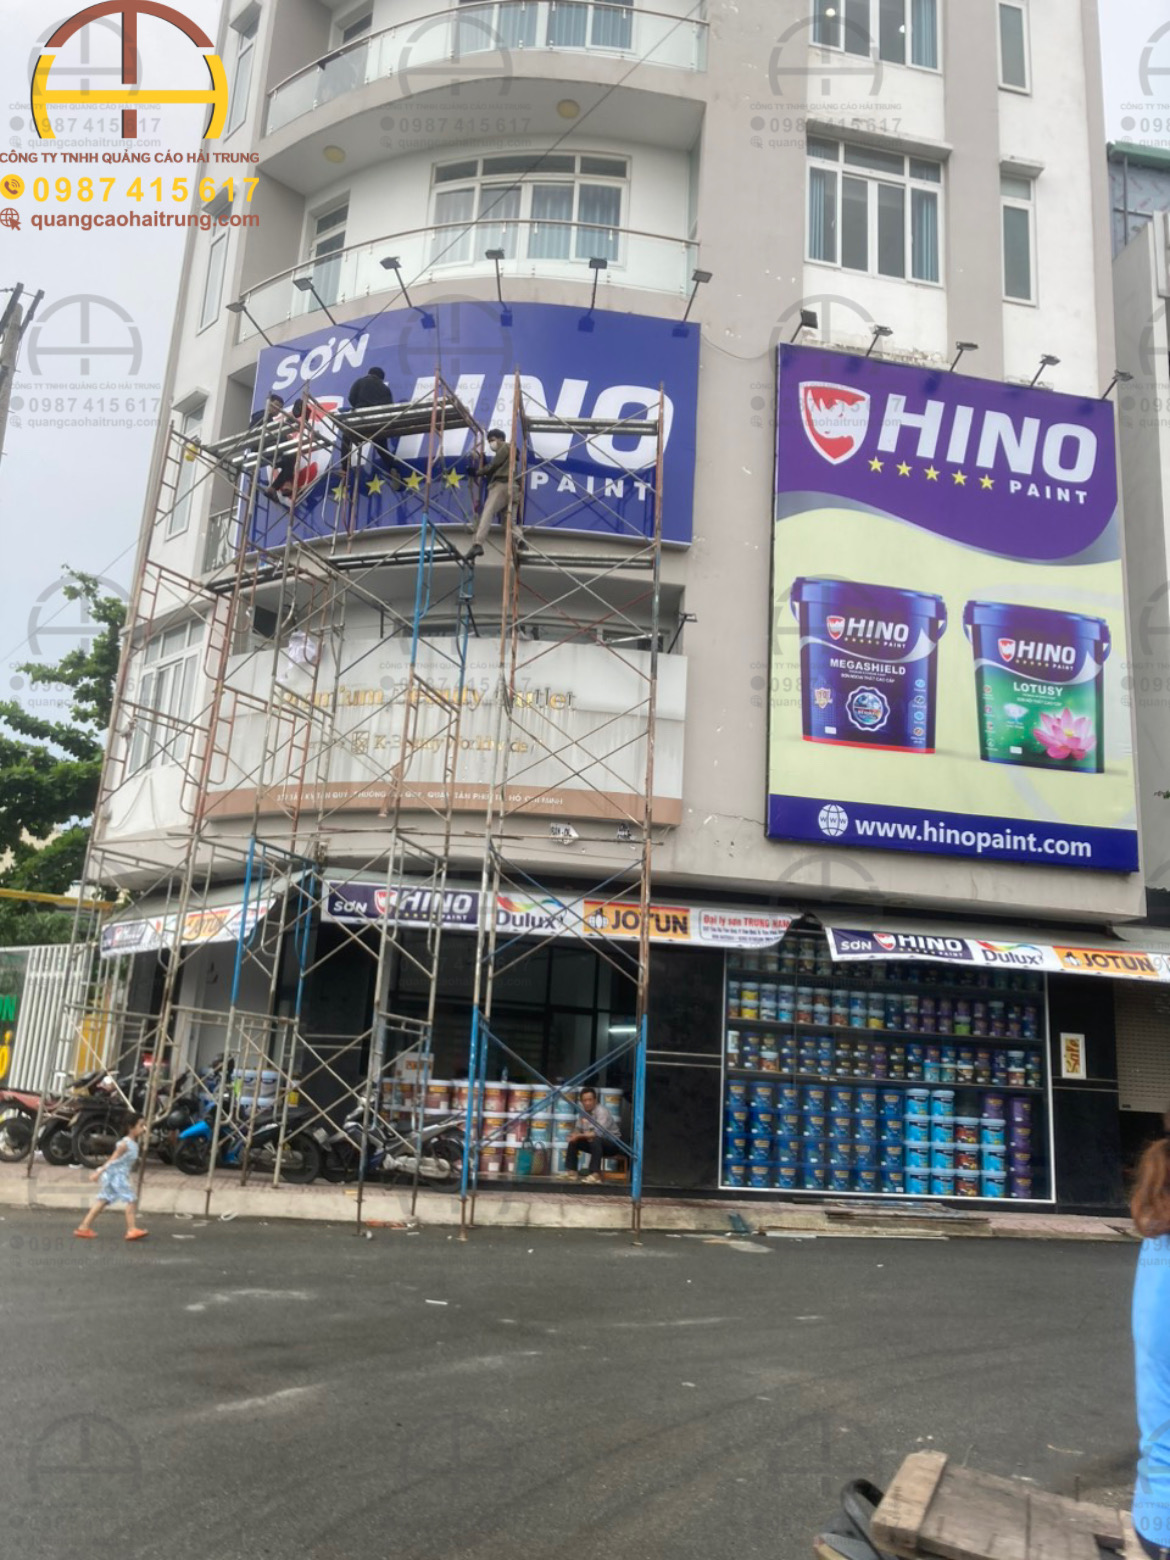 Thi công chuỗi bảng hiệu quảng cáo cho các nhà phân phối Sơn HINO trên toàn quốc.